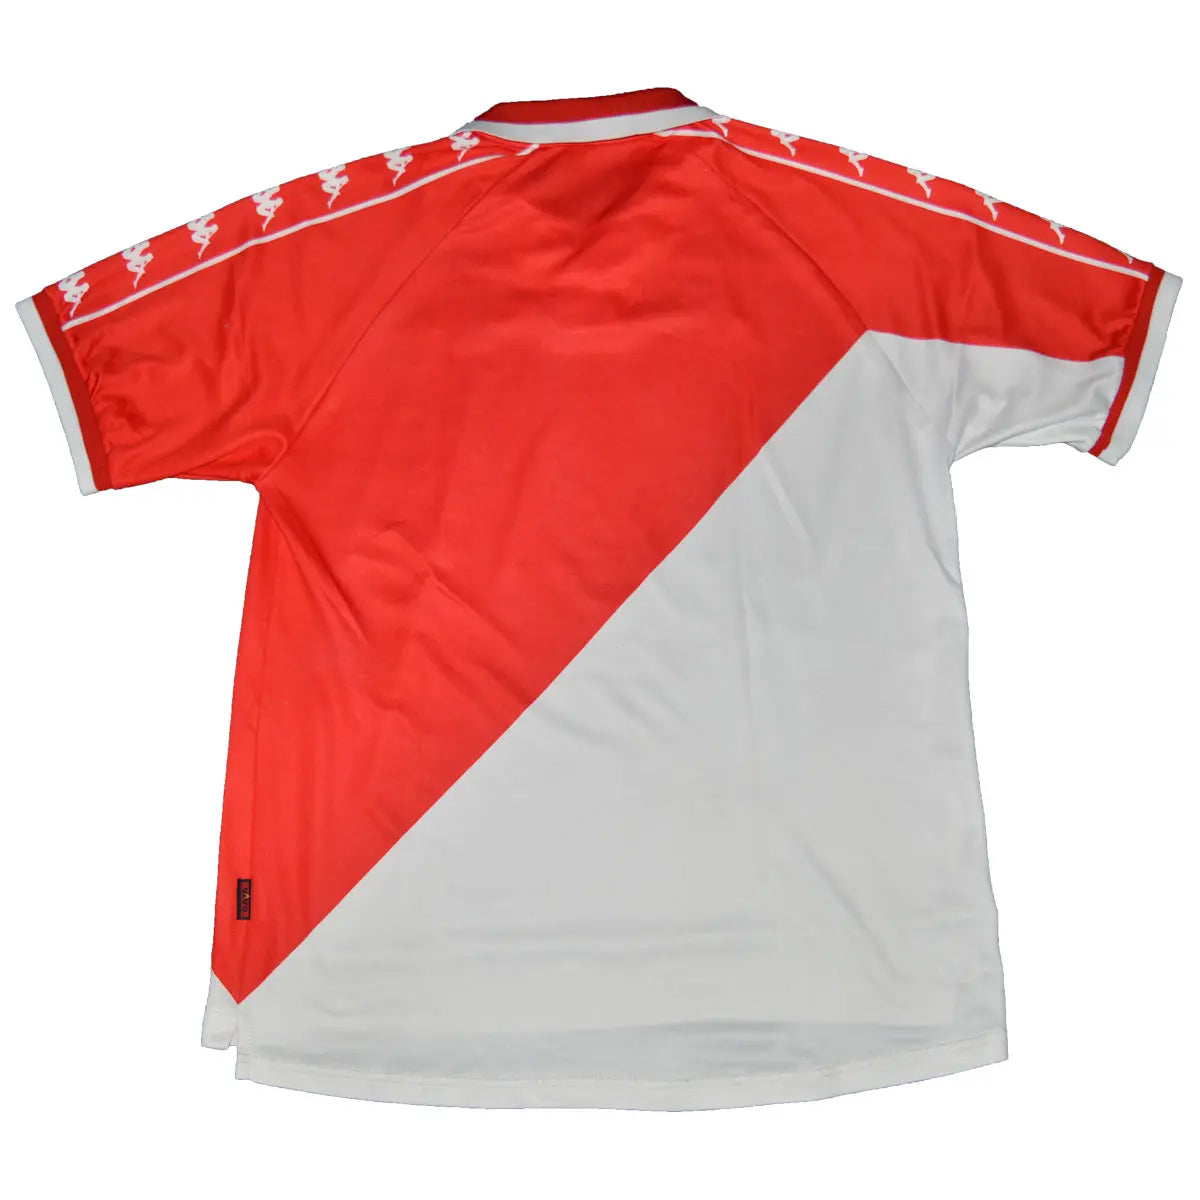 Maillot de foot rétro/vintage authentique rouge et blanc Kappa AS Monaco domicile 2000-2001 de dos